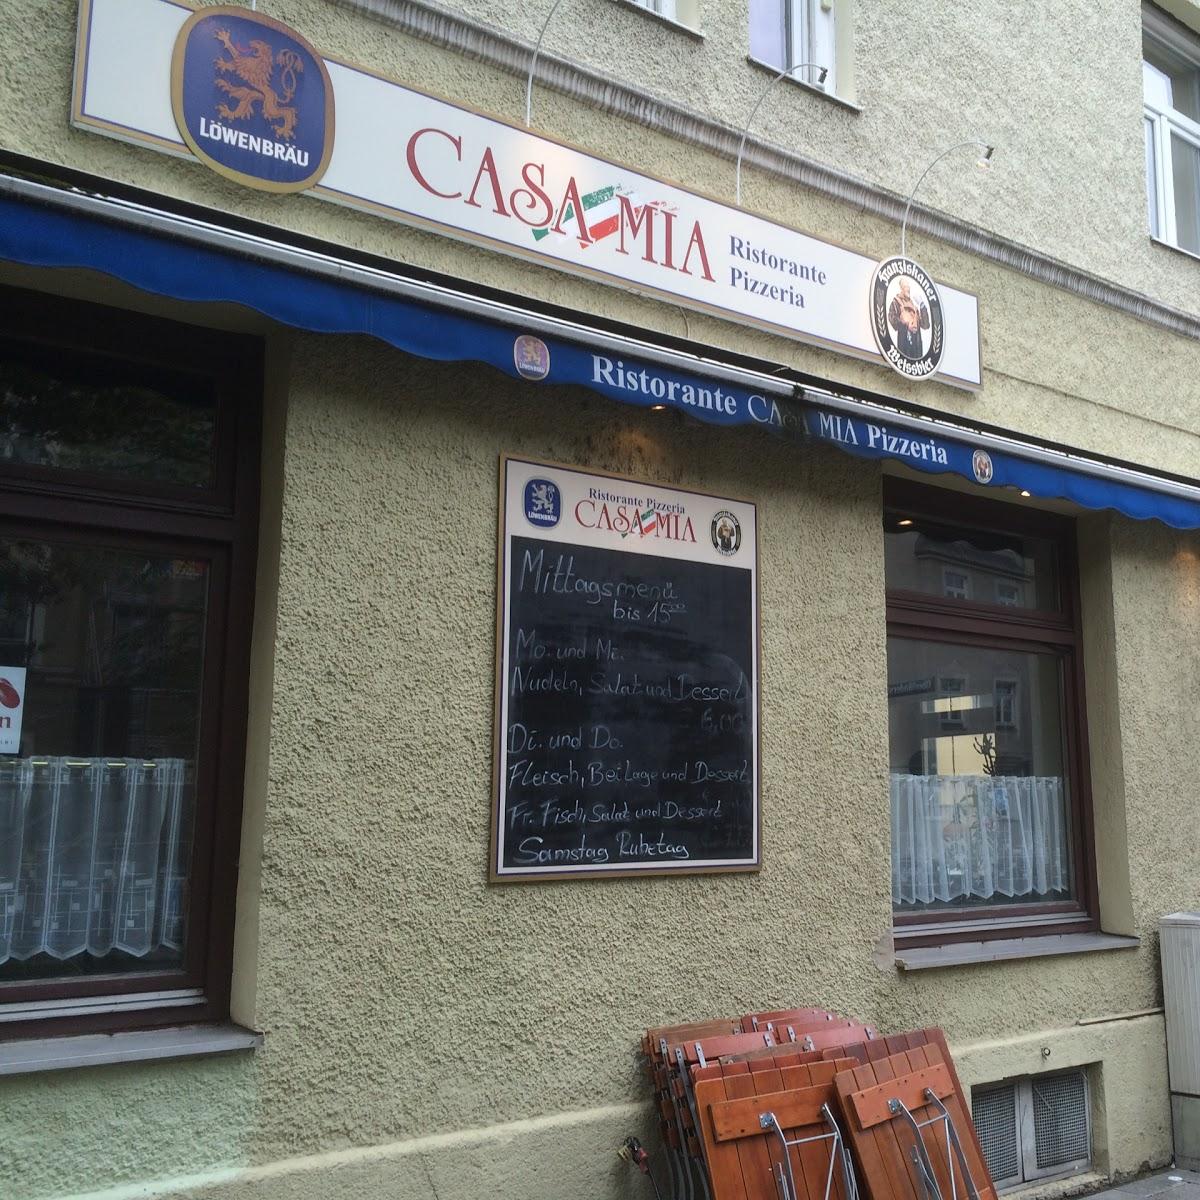 Restaurant "Casa Mia" in München